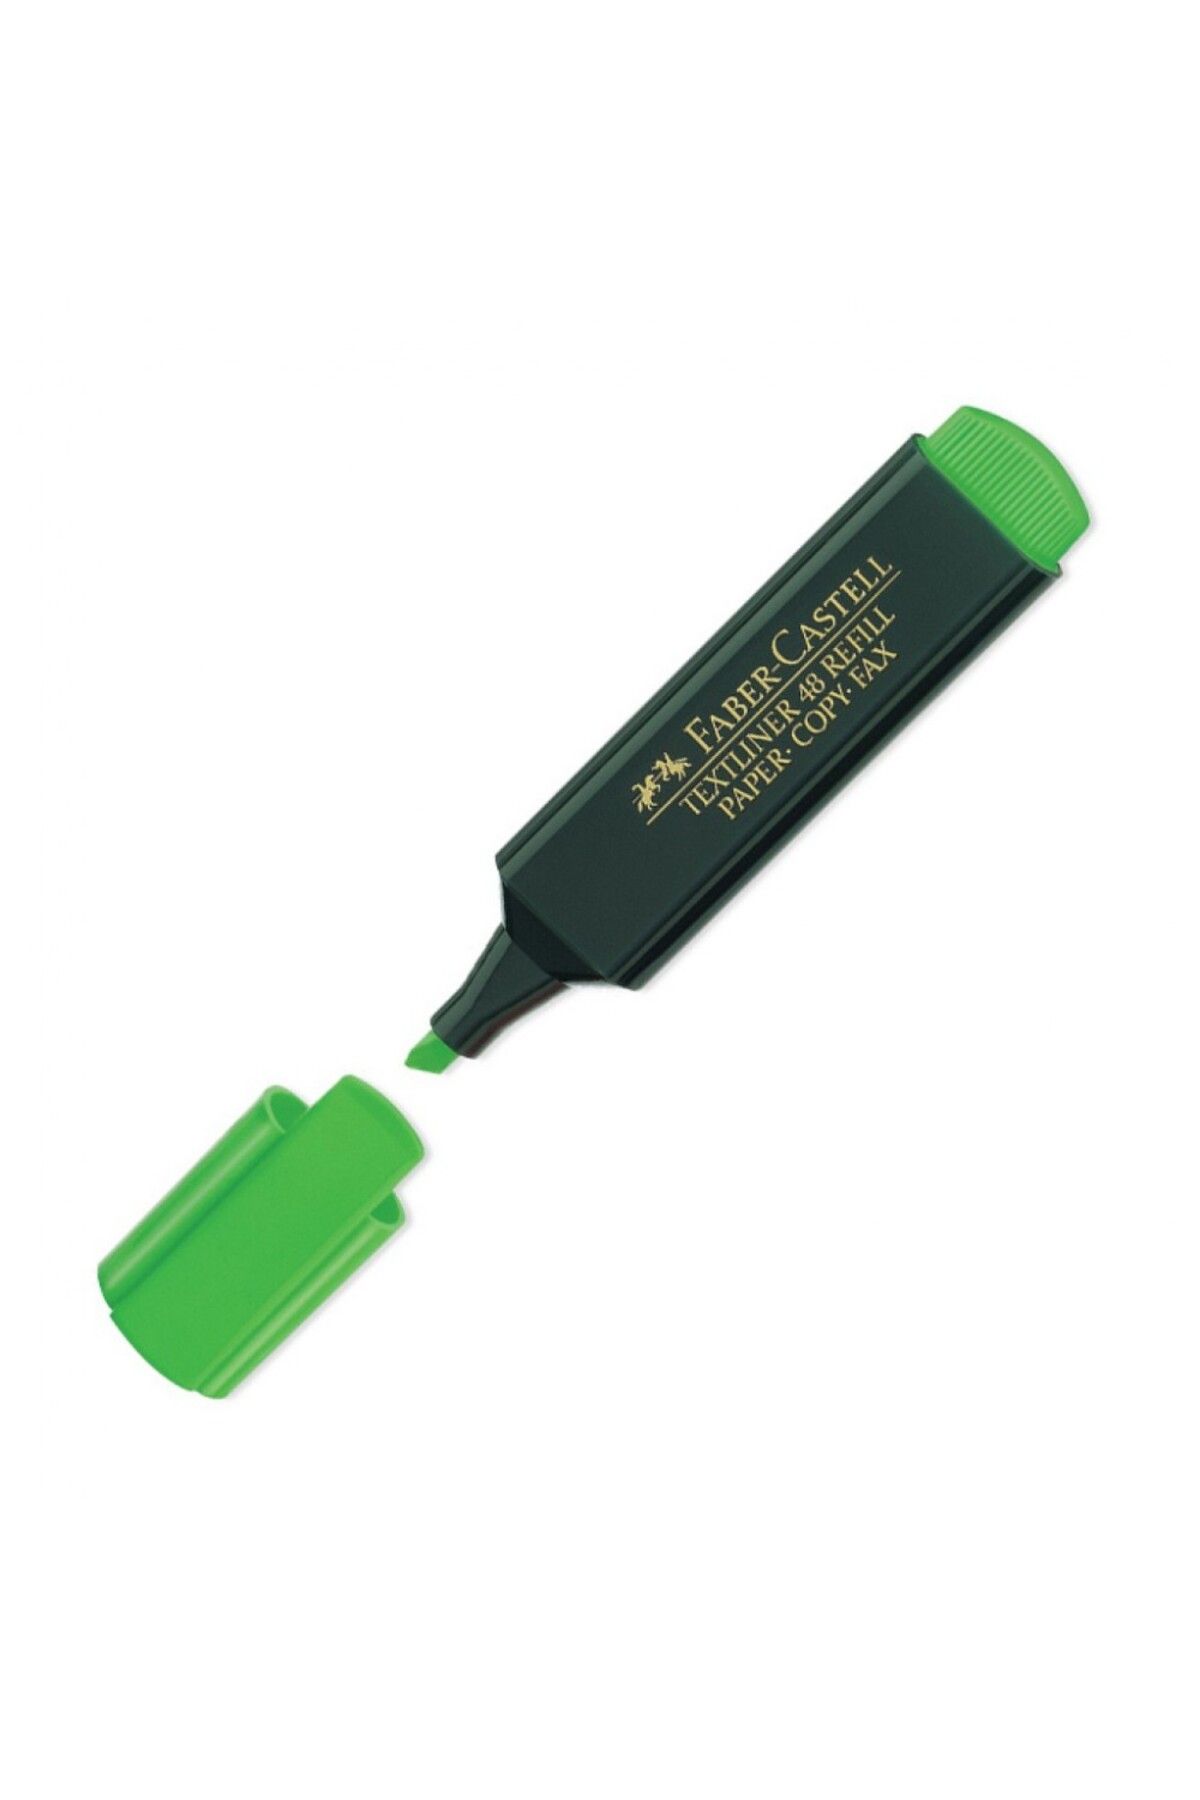 Faber Castell Yeşil Fosforlu Kalem